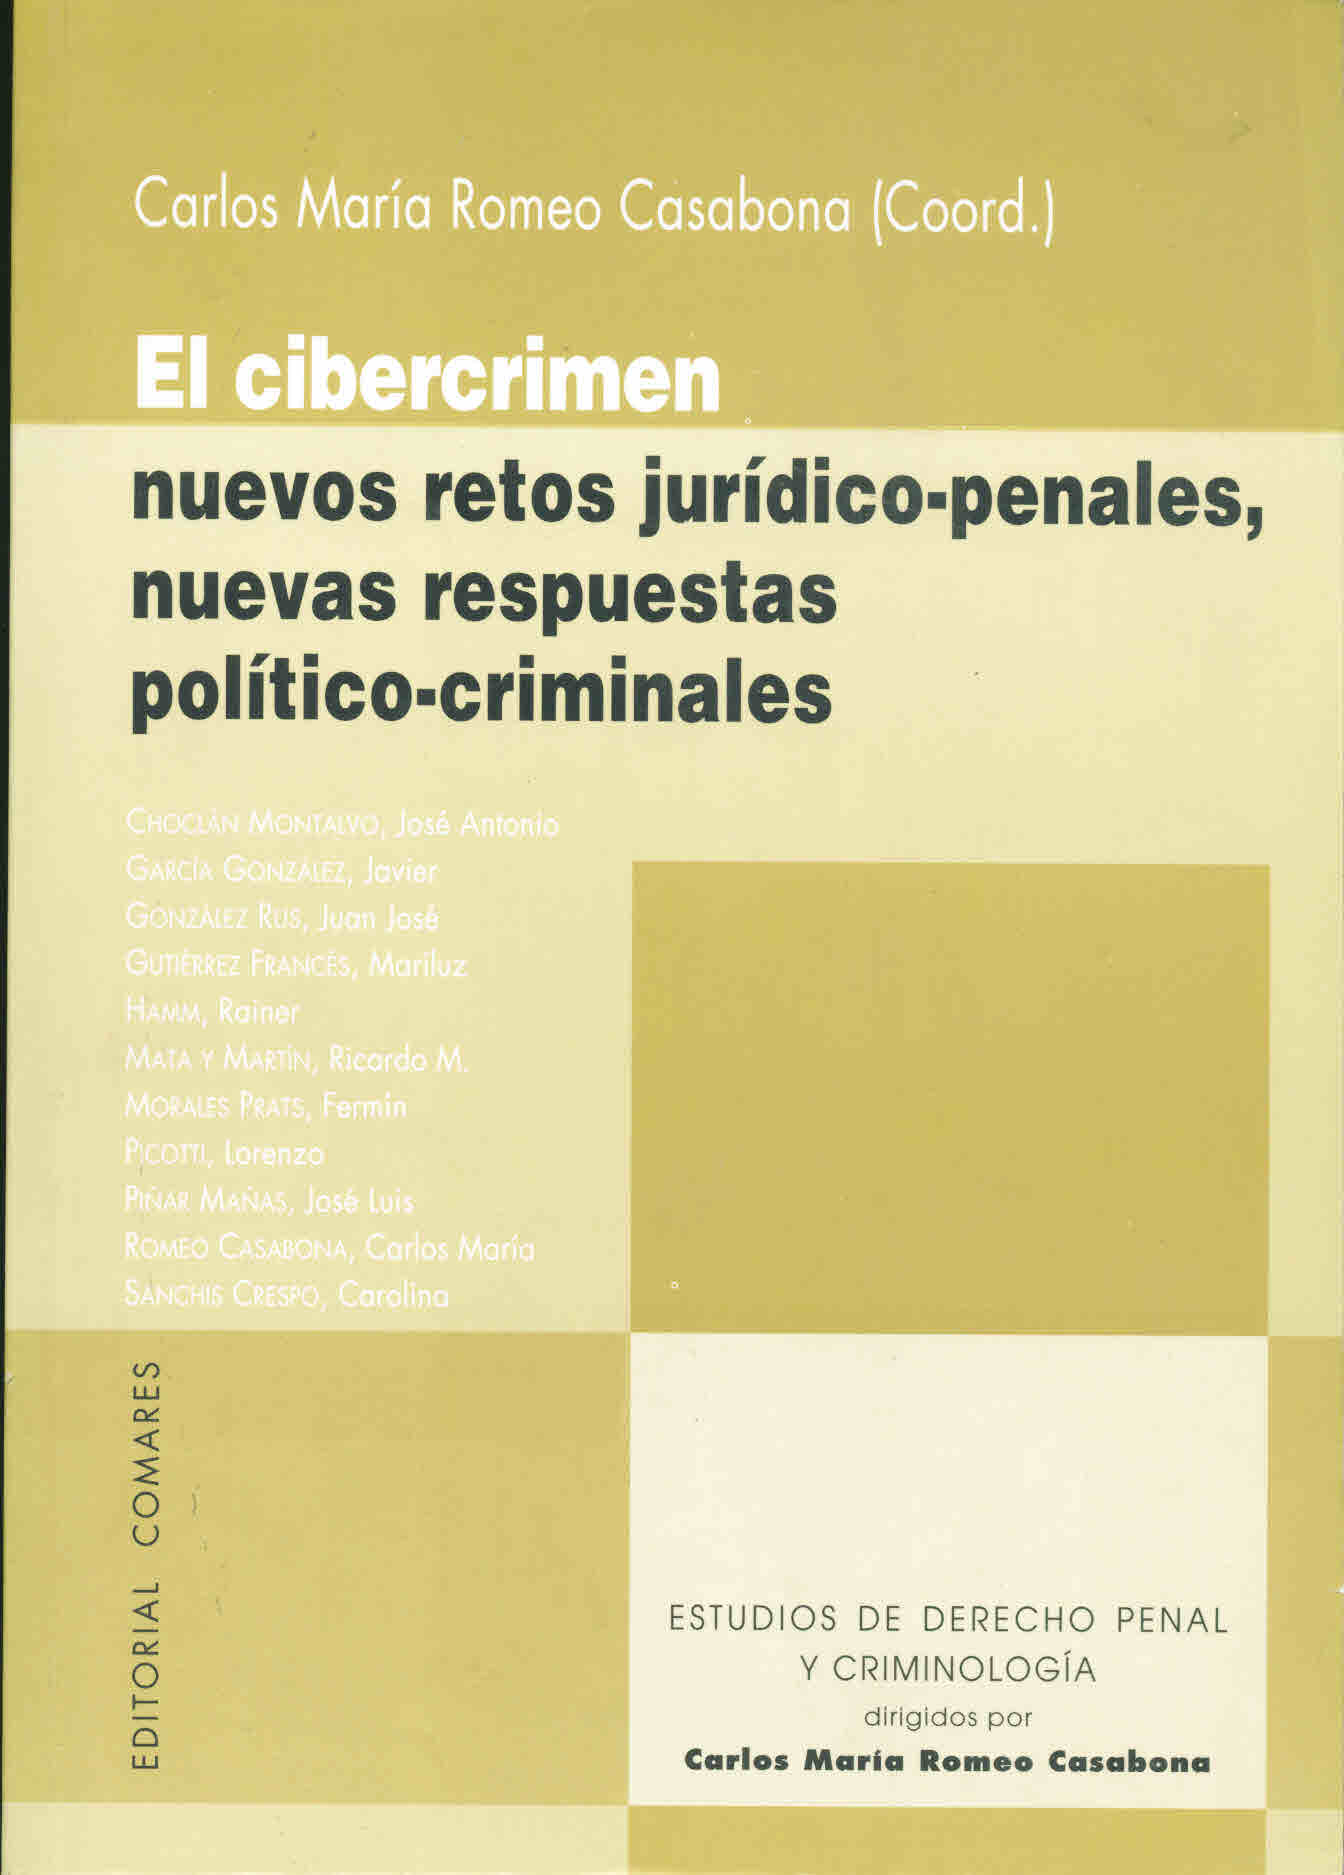 El cibercrimen: nuevos retos jurídico-penales, nuevas propuestas político-criminales